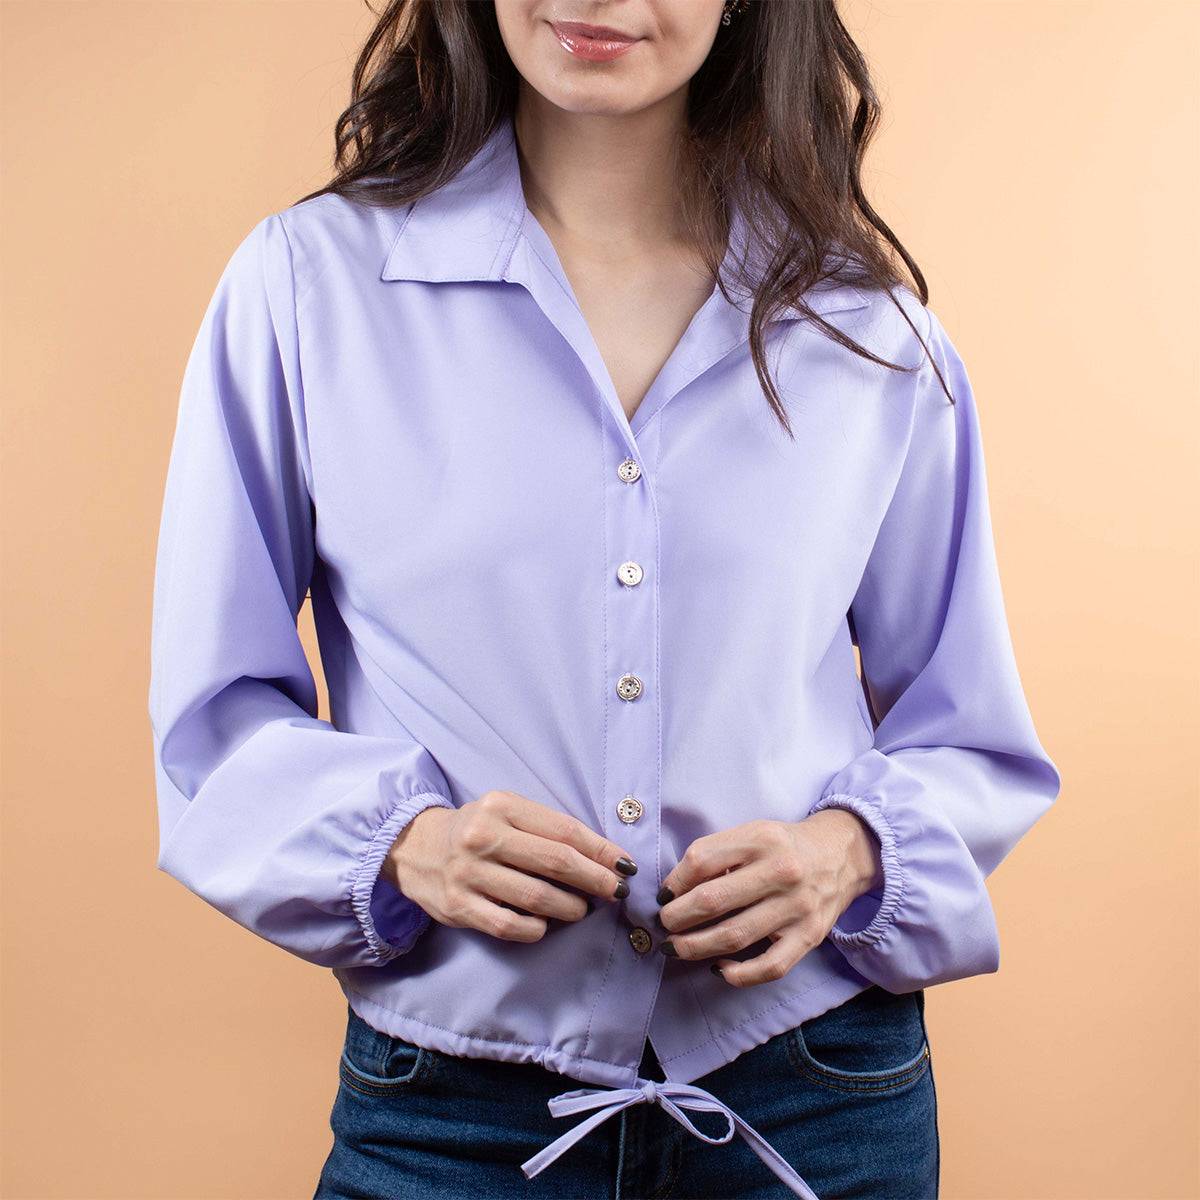 Camisa color lila con resorte en manga y moño en abdomen